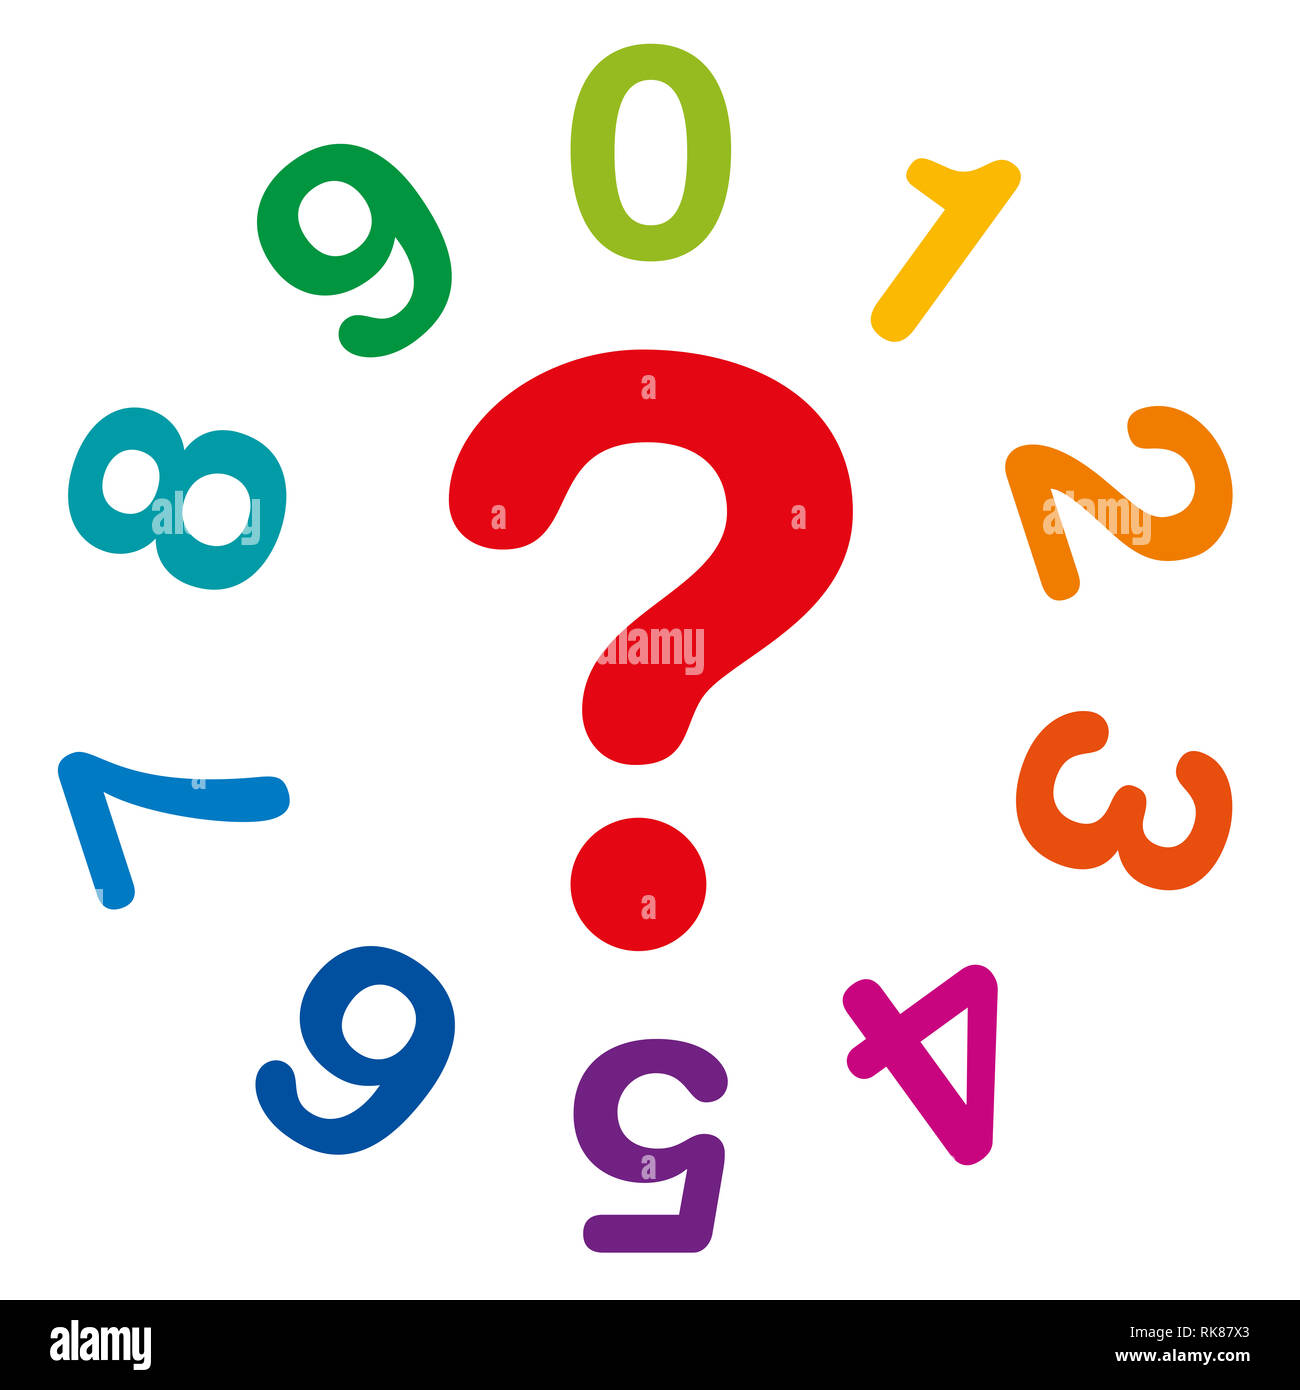 Dix numéros de couleur arc-en-ciel, d'un à zéro, formant un cercle, avec point d'interrogation rouge dans le milieu, comme symbole pour la numérologie et voyance. Banque D'Images